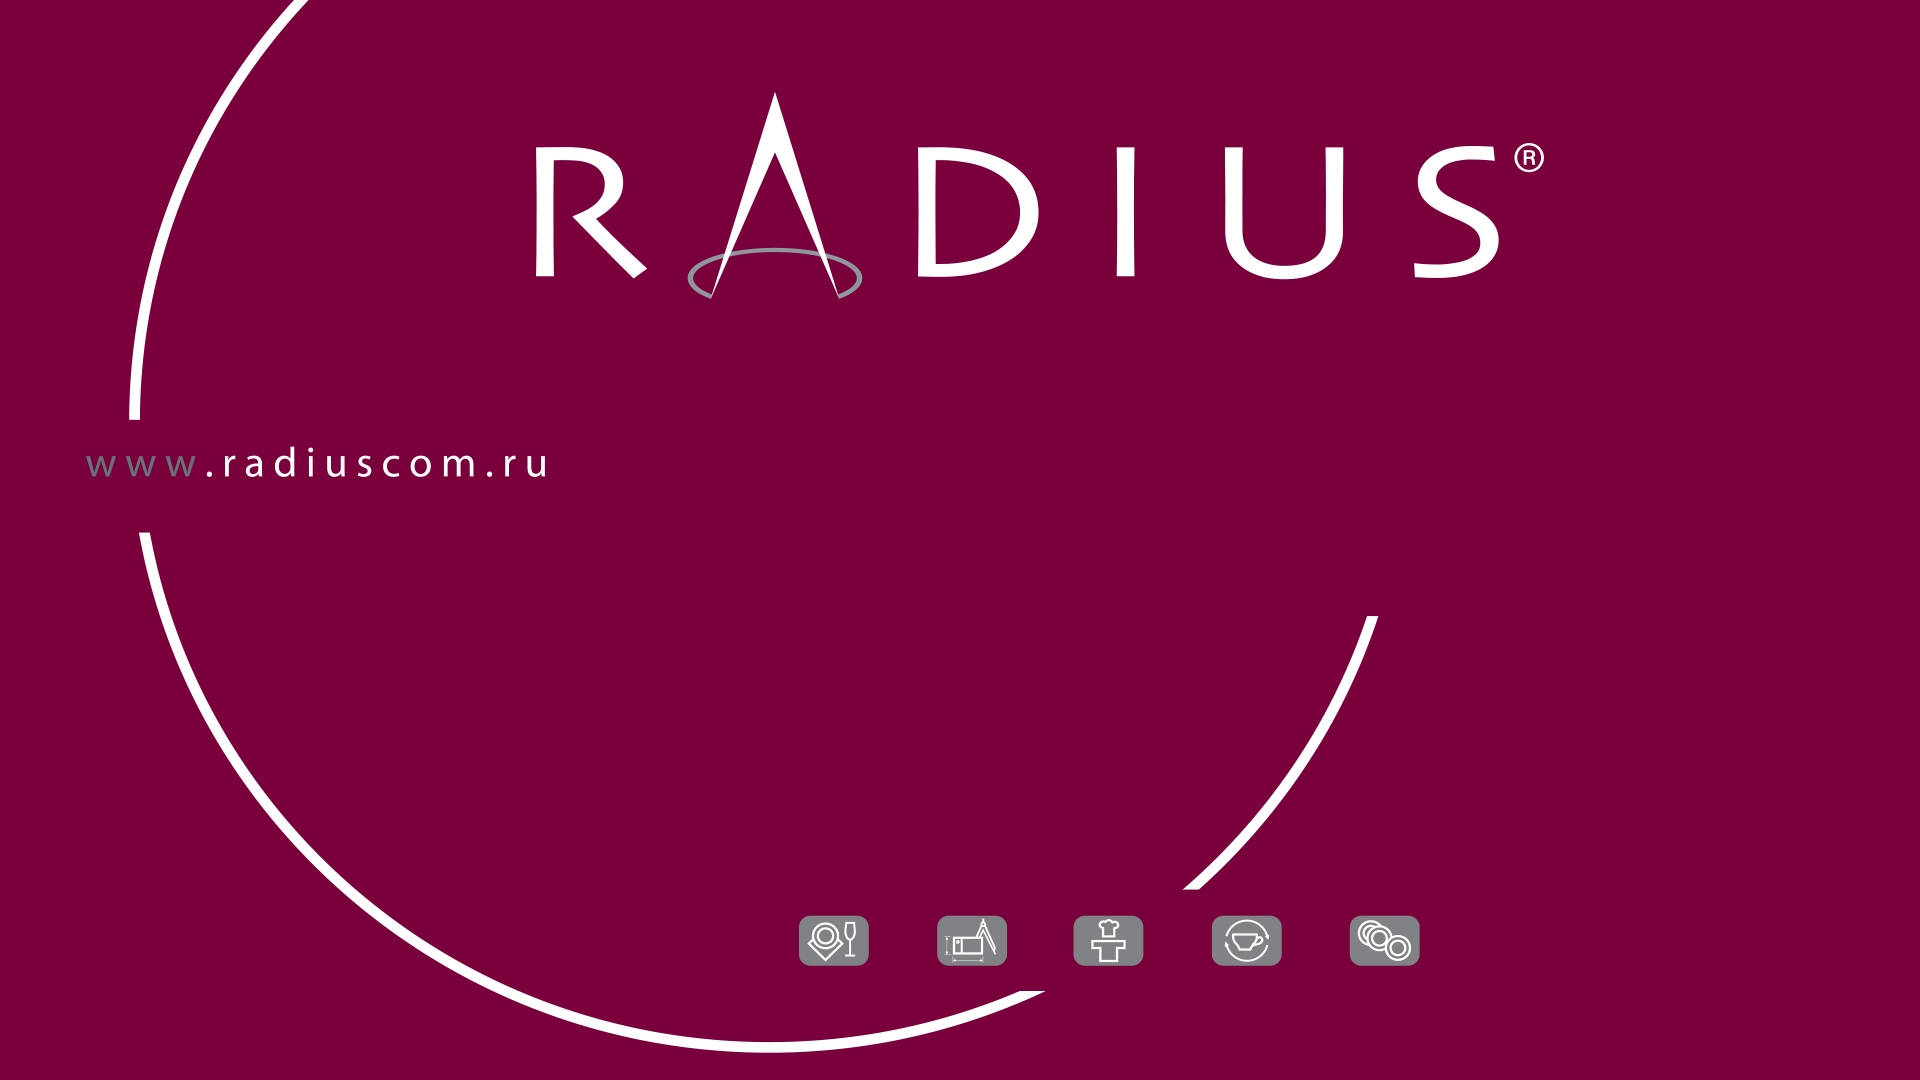 Радиус - Редизайн корпоративного стиля